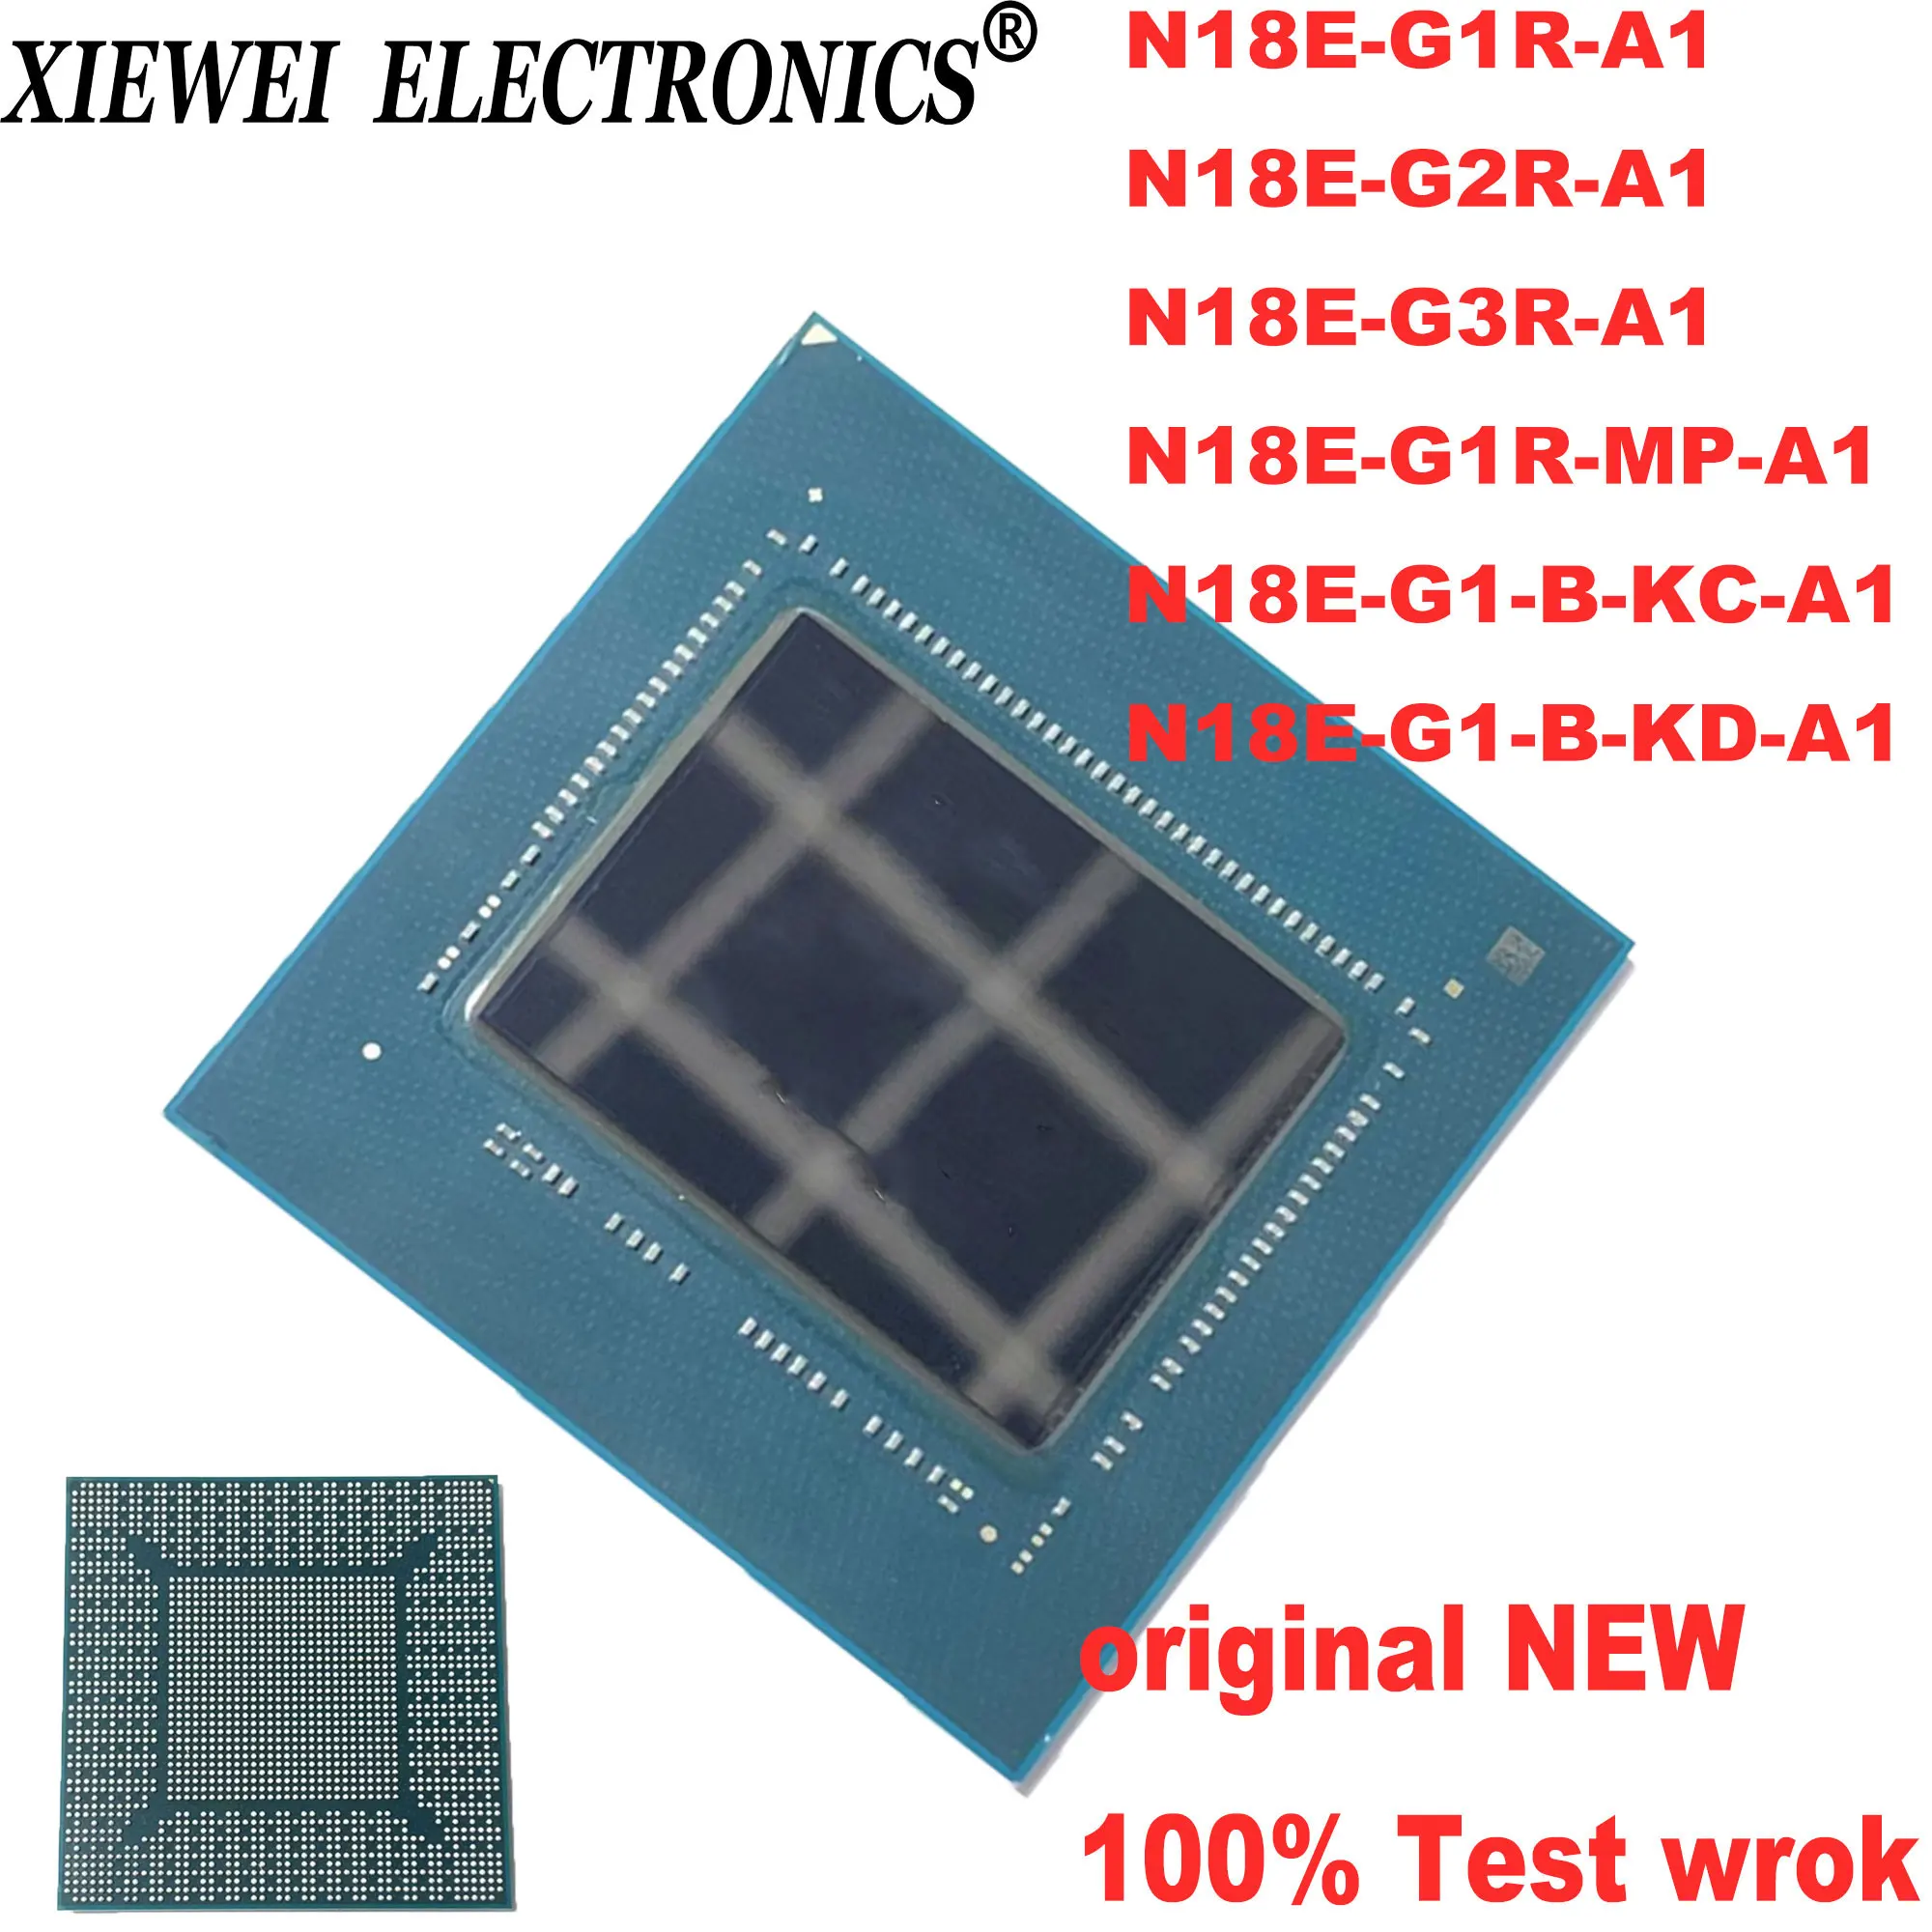 

100% NEW tested work N18E-G1R-A1 N18E-G2R-A1 N18E-G3R-A1 N18E-G1R-MP-A1 N18E-G1-B-KC-A1 N18E-G1-B-KD-A1 RTX2060 BGA Chipset